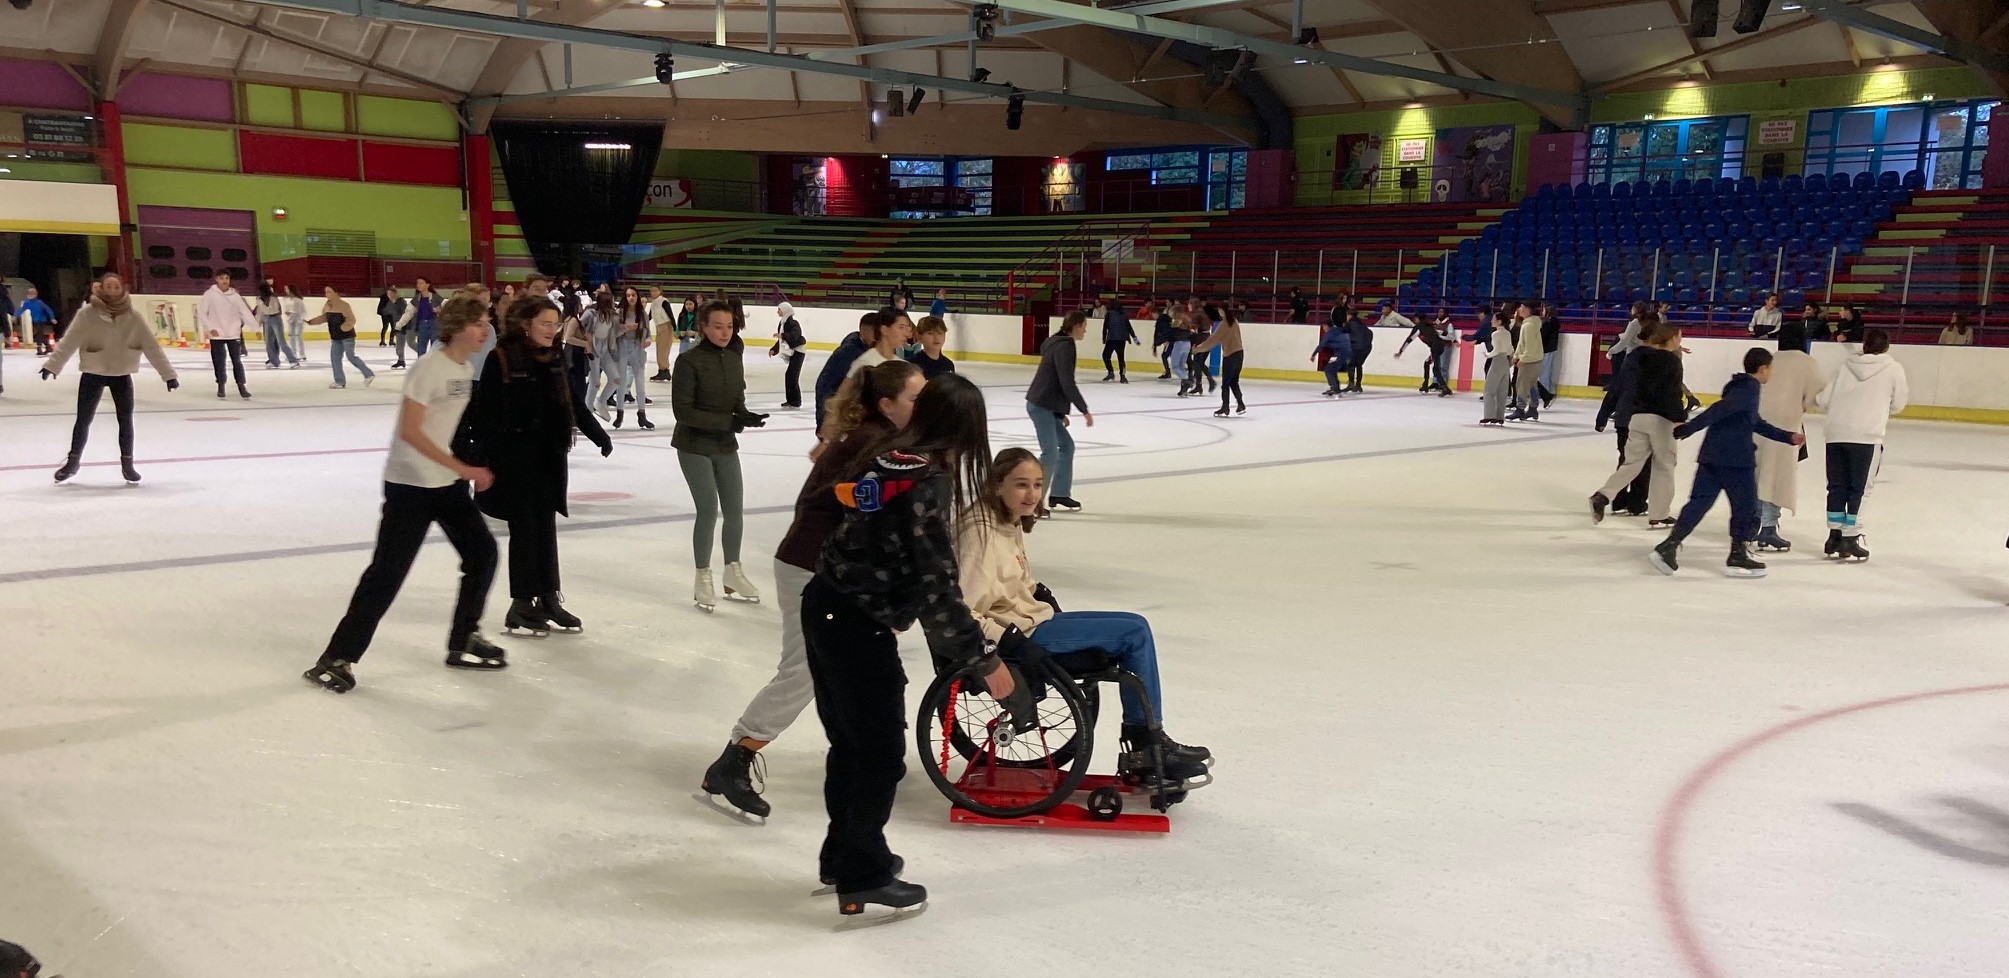 Handisport sur glace, patinage sur glace en fauteuil roulant, entre amis